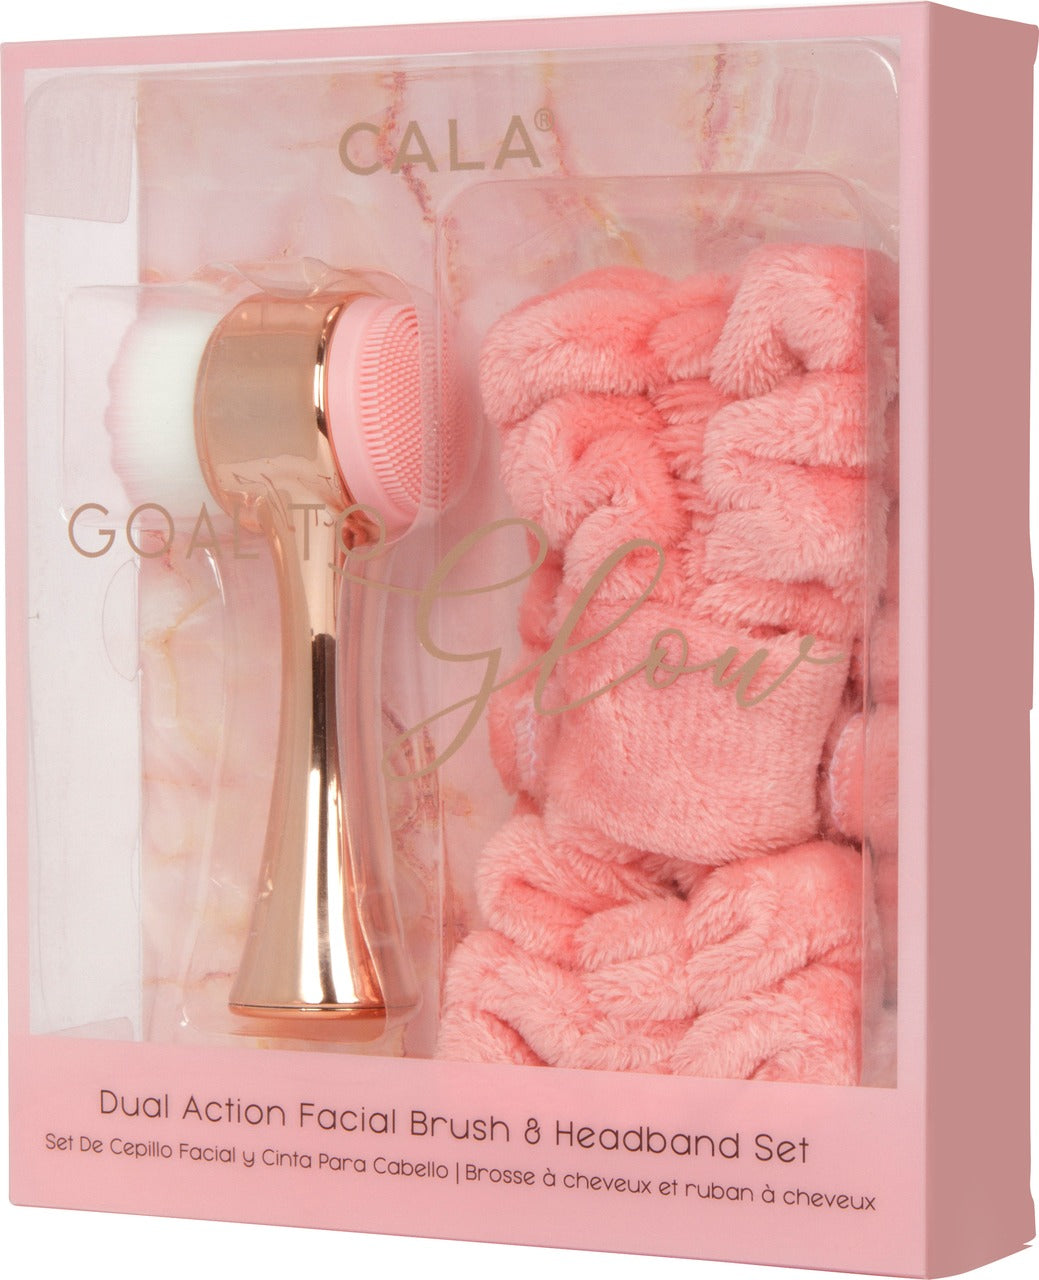 Cala Glow to Goal Dual Action Facial Brush & Headband Set